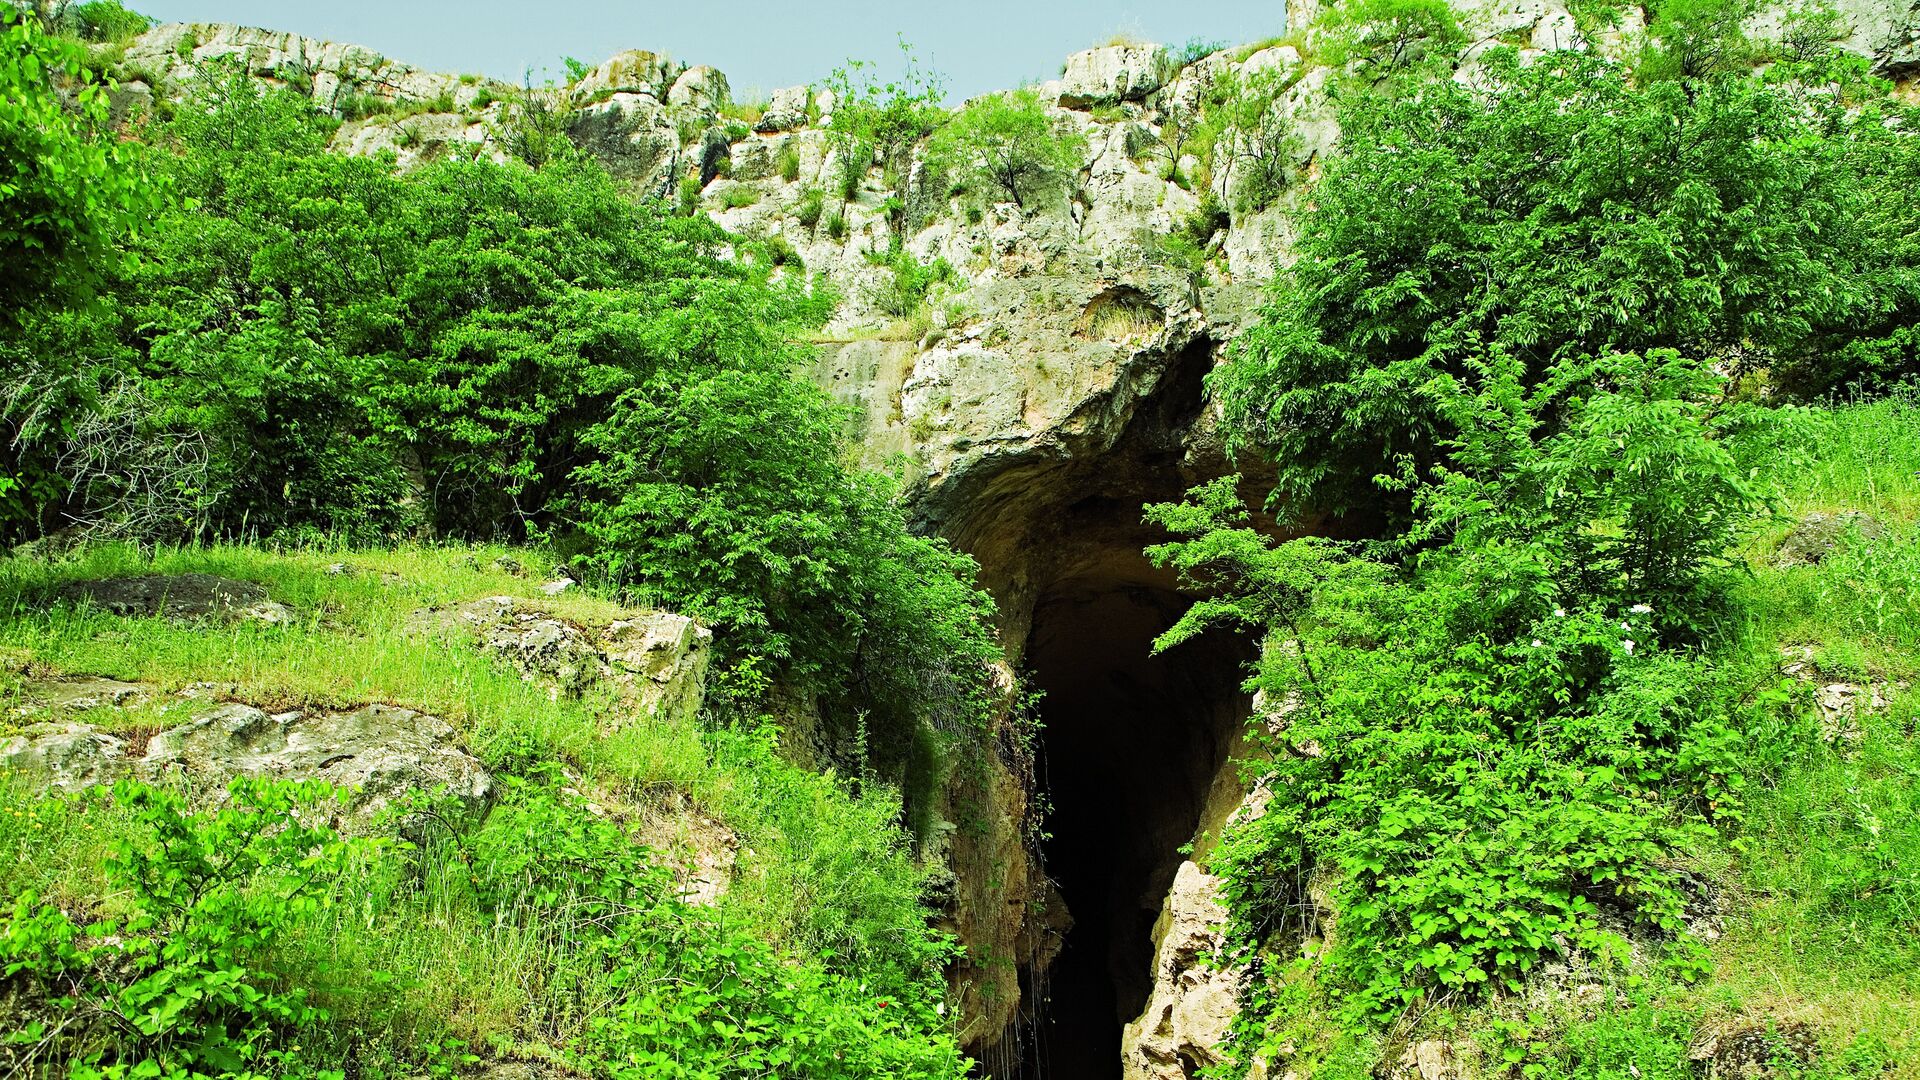 Азыхская пещера - Sputnik Азербайджан, 1920, 18.03.2021